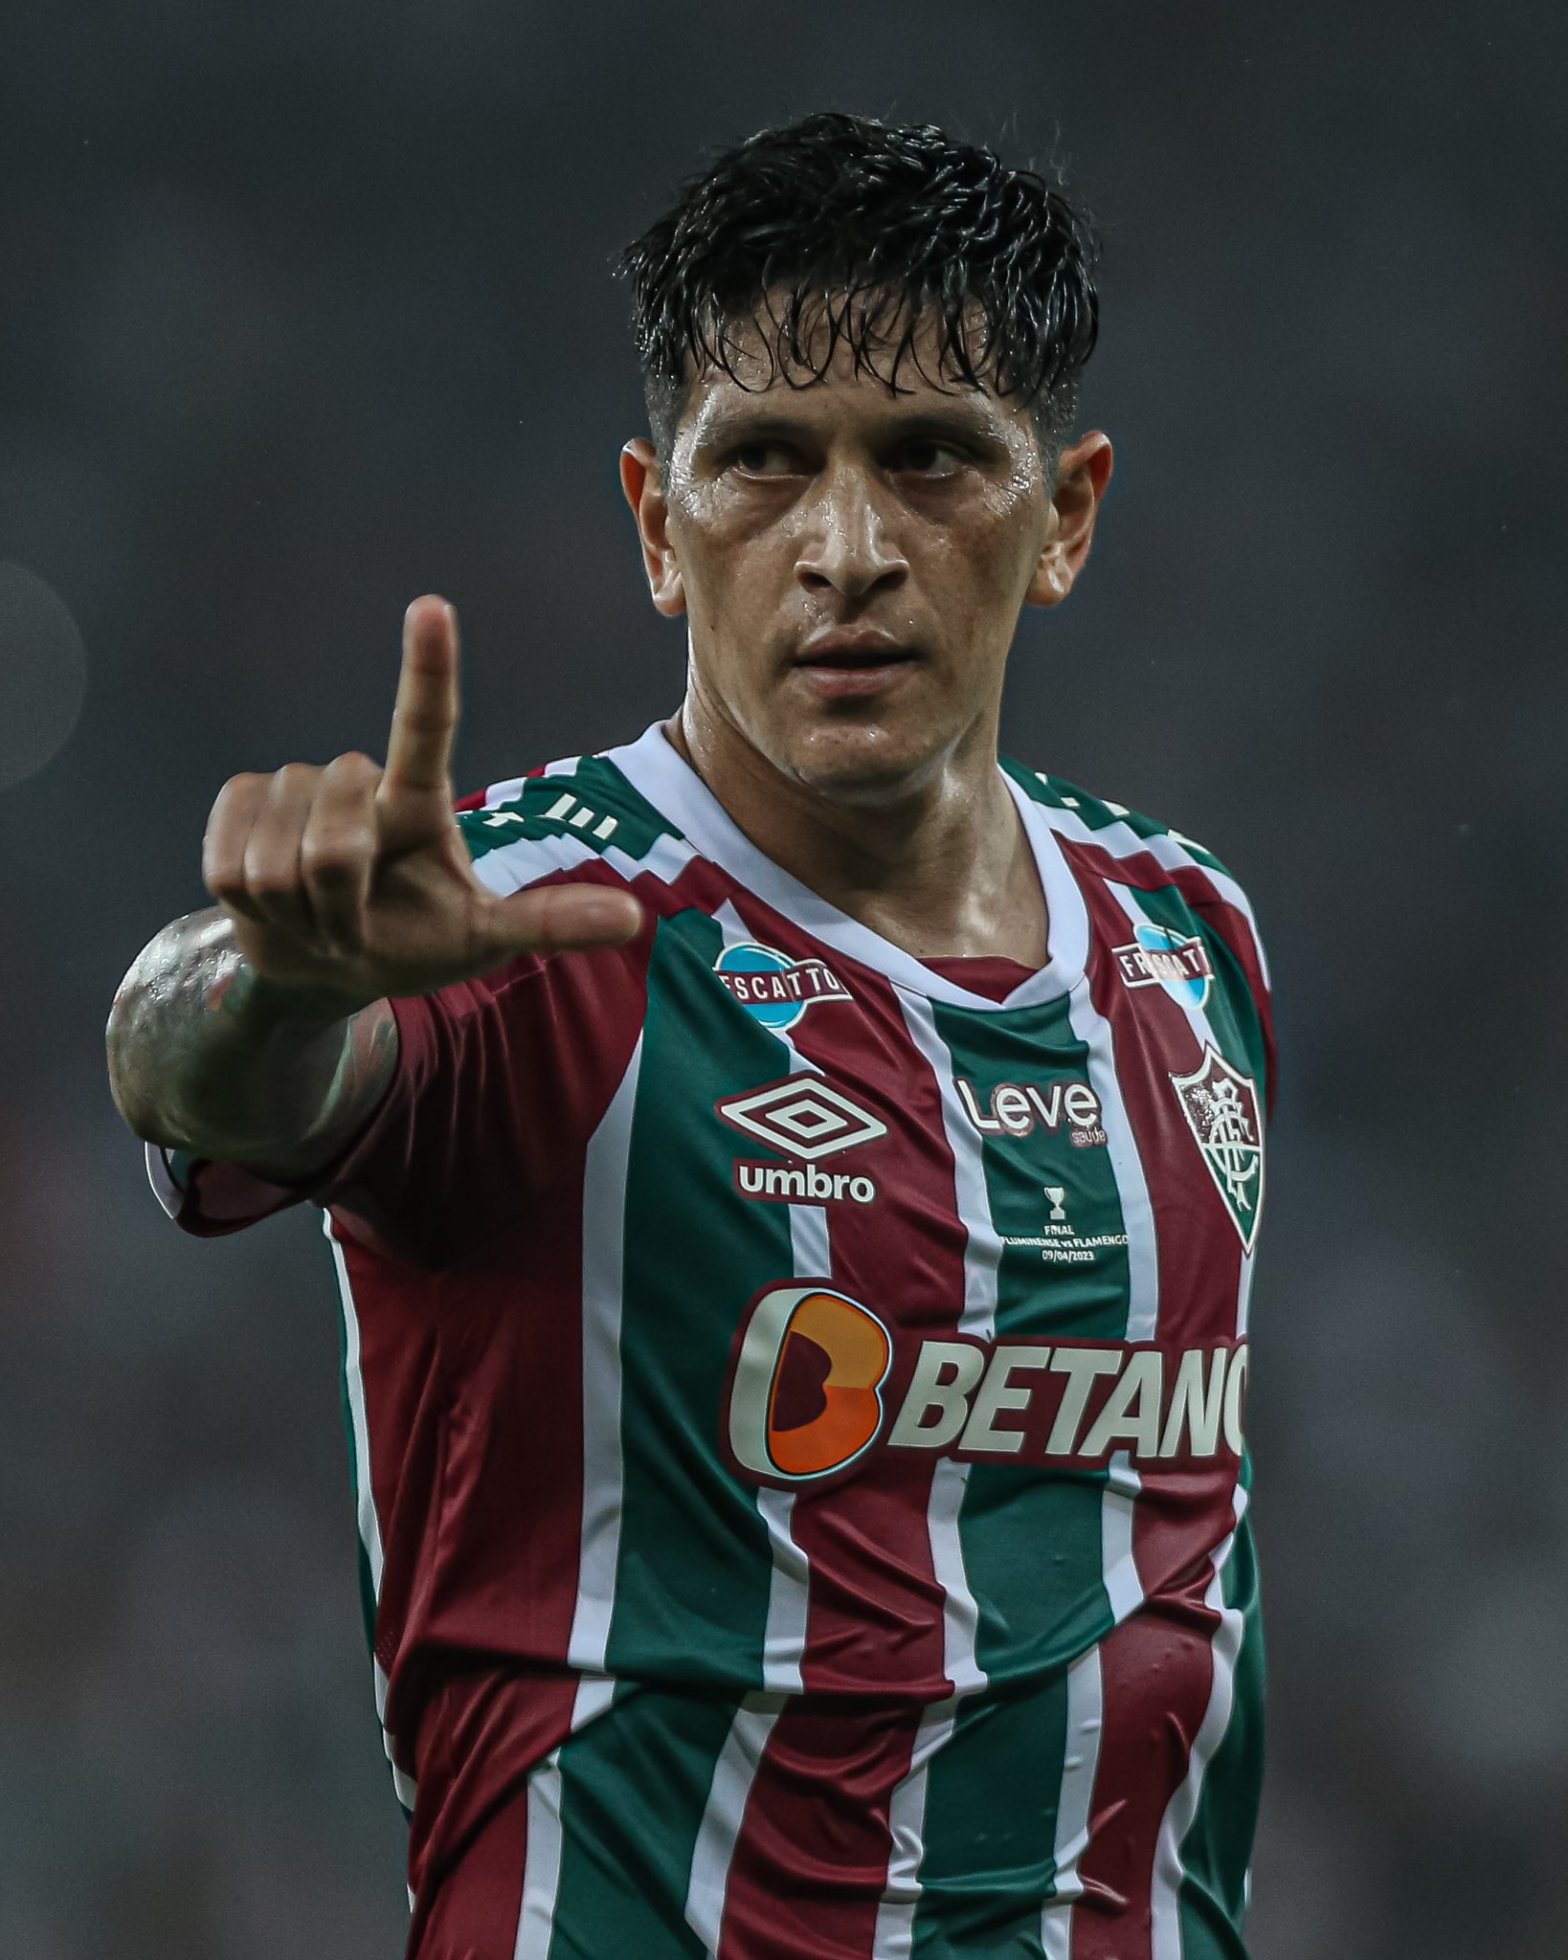 Nino projeta “mais uma final” em clássico que pode deixar Flu na liderança  — Fluminense Football Club